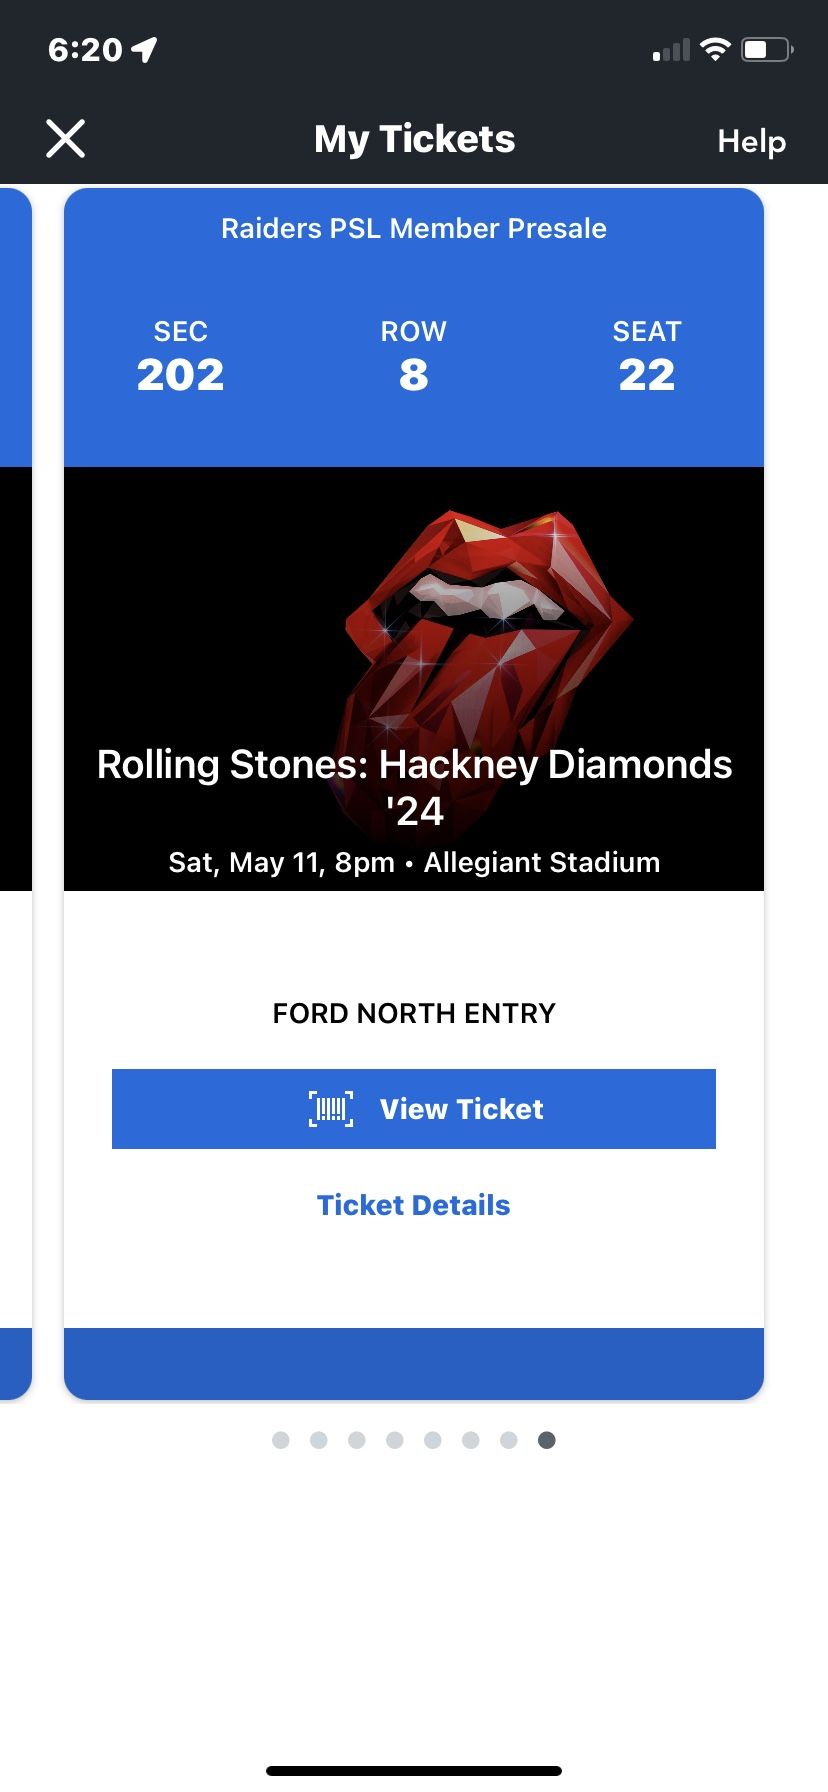 2 Rolling Stones Tickets In Las Vegas @ Allegiant Stadium $200Each